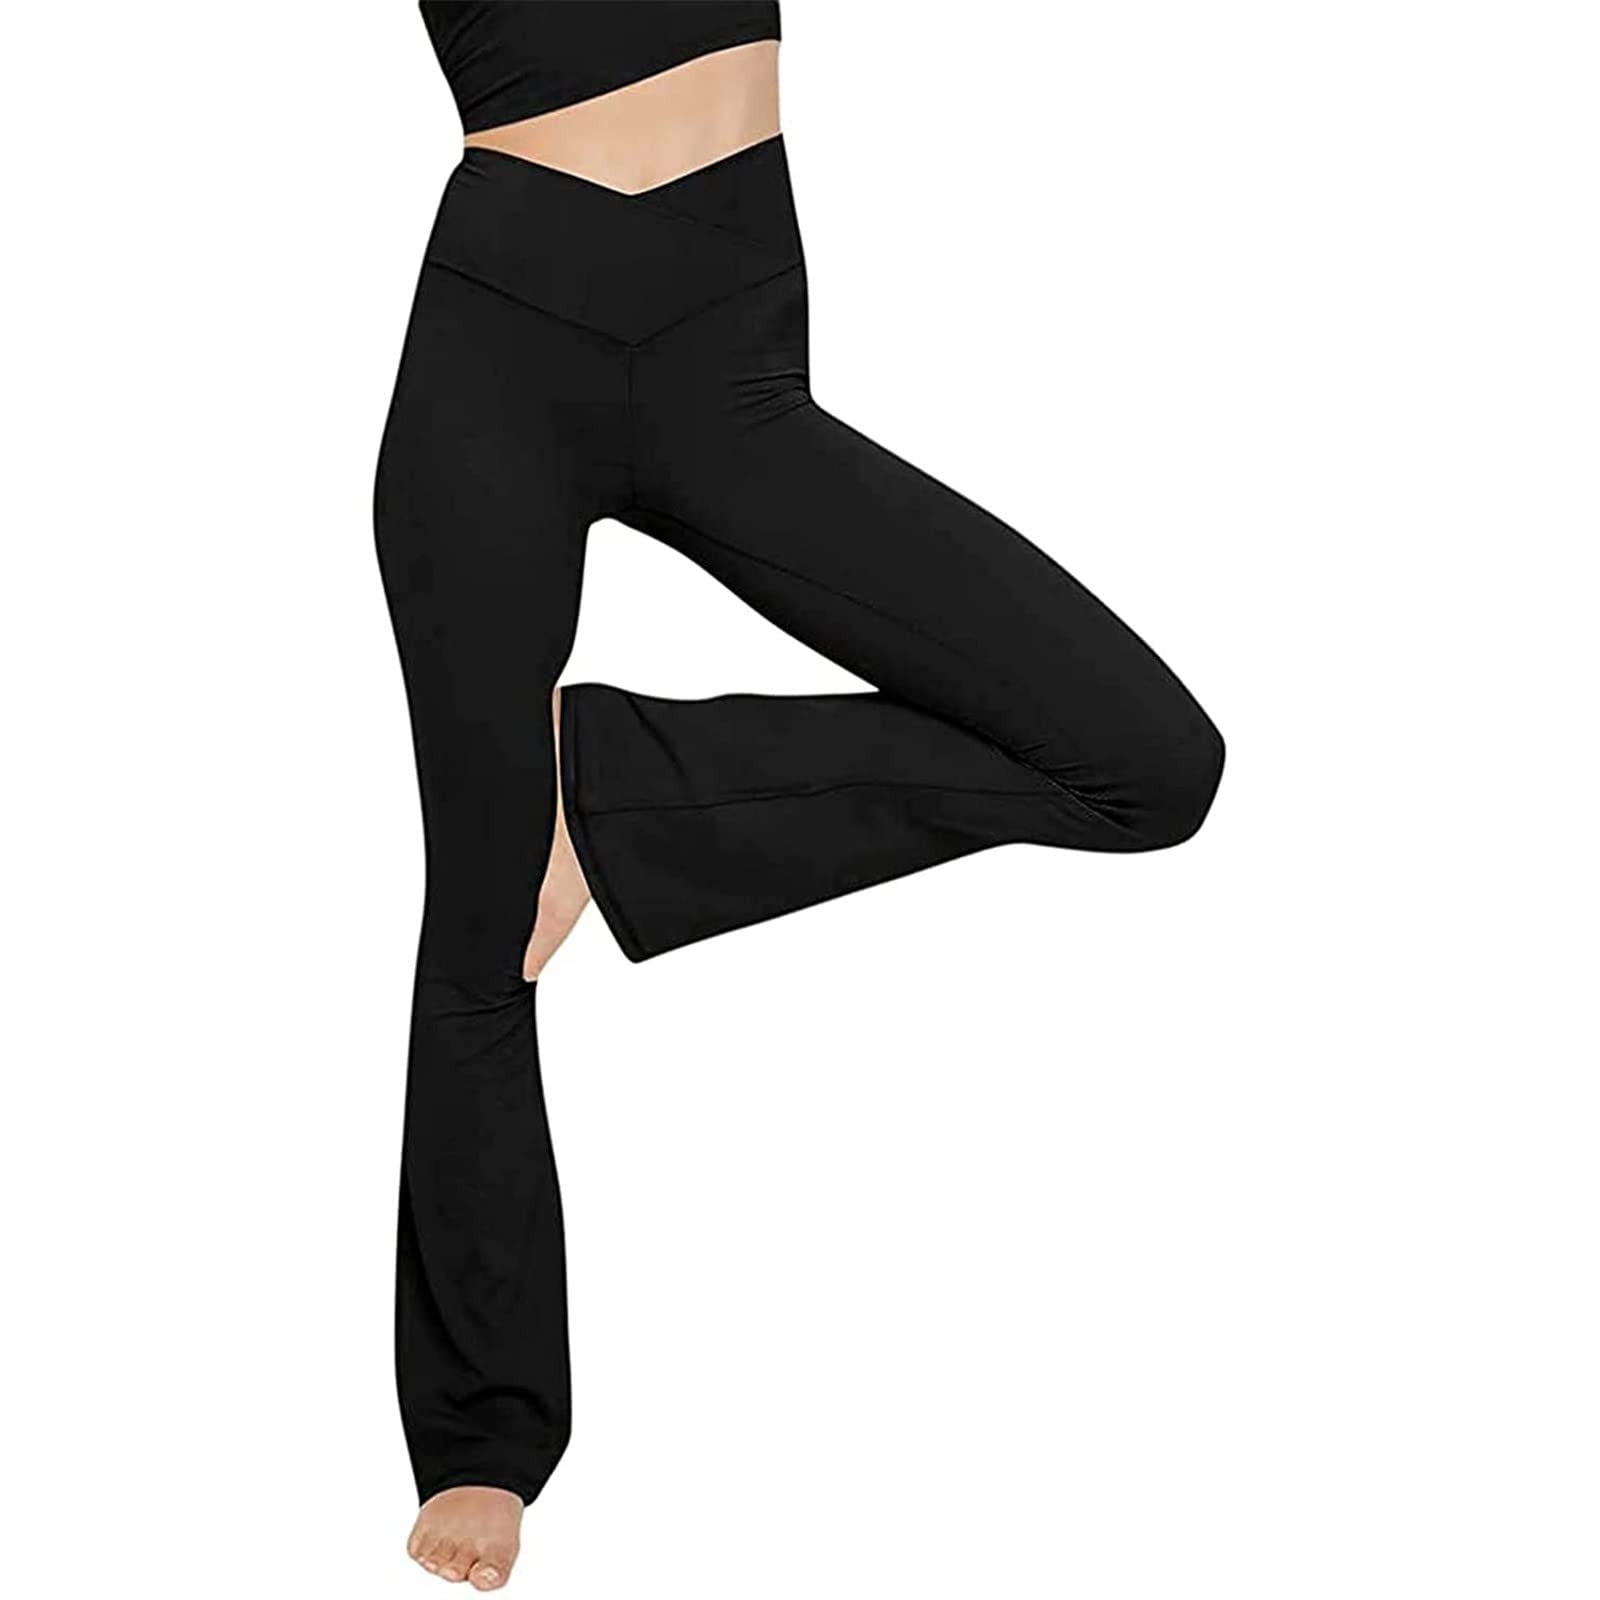 Lands' End Women's Petite Active Yoga Pants - X-Small - Black